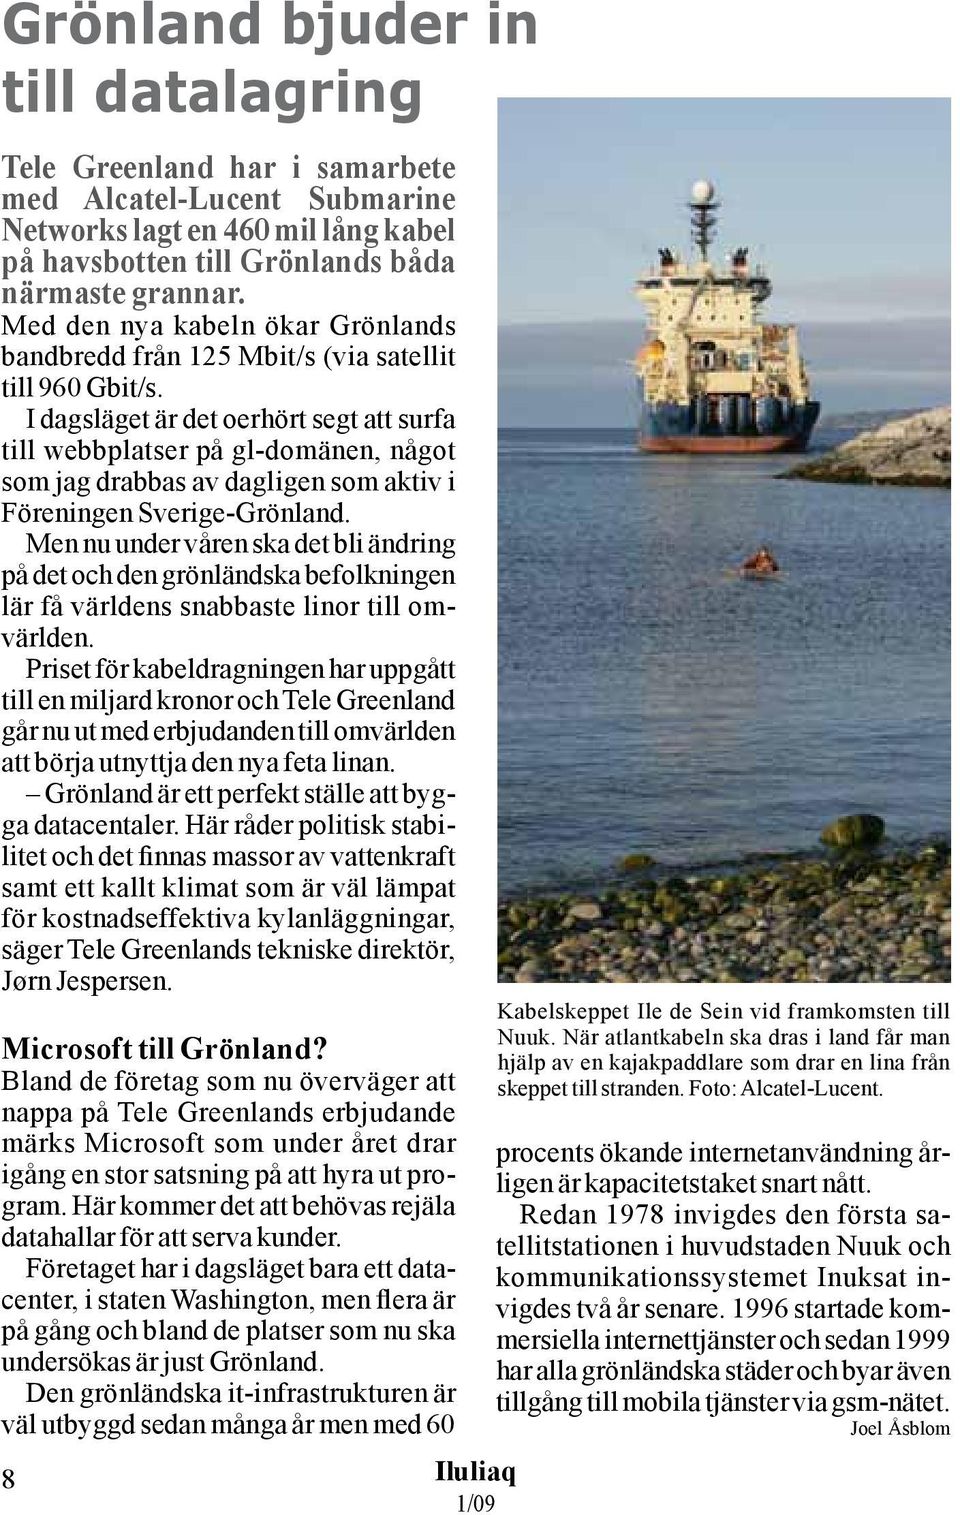 I dagsläget är det oerhört segt att surfa till webbplatser på gl-domänen, något som jag drabbas av dagligen som aktiv i Föreningen Sverige-Grönland.